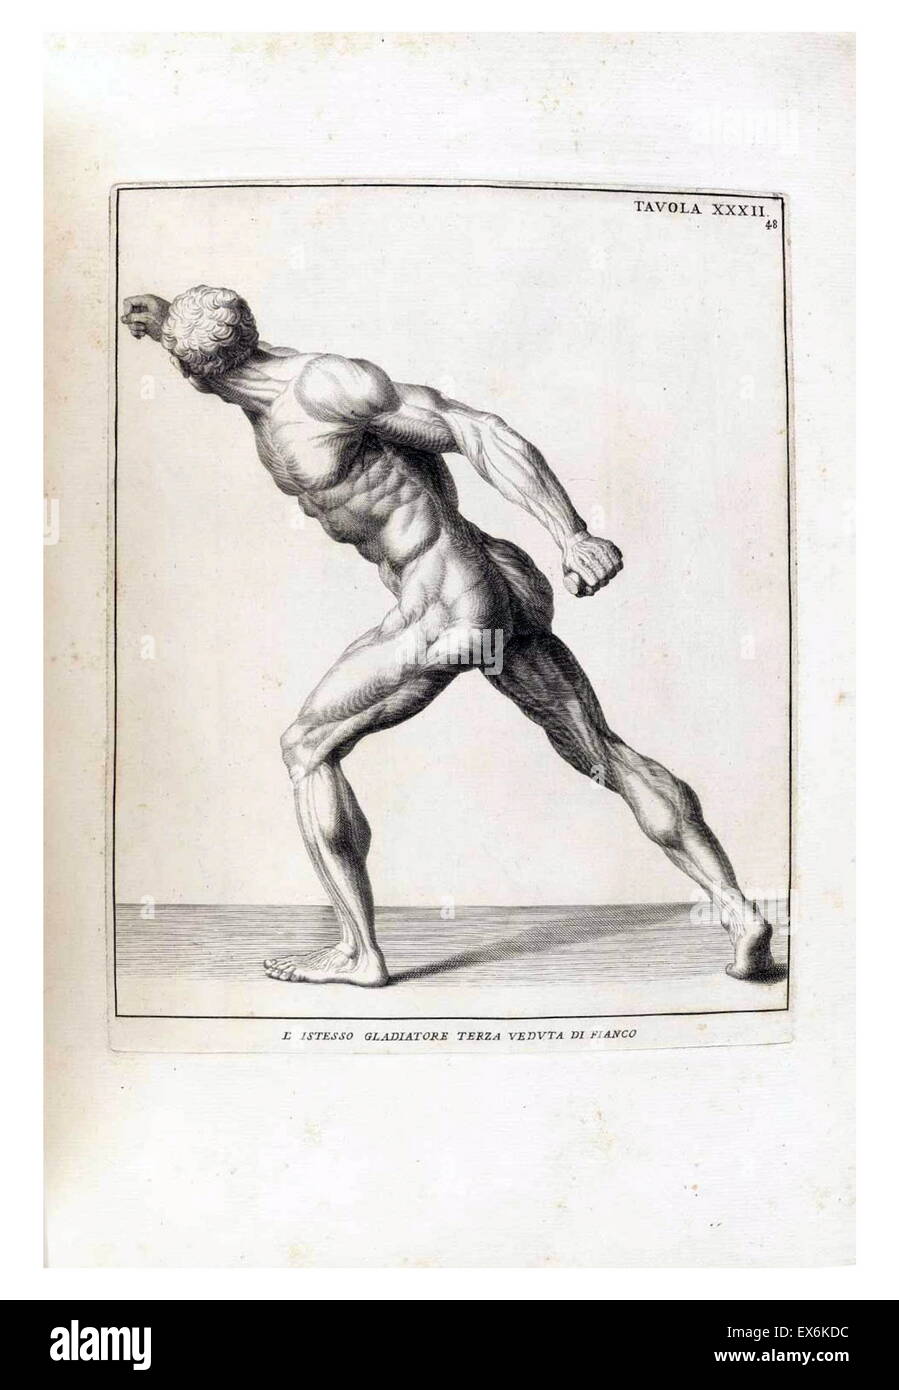 Étude anatomique par Bernardino Genga 'Anatomia per uso et intelligenza del disegno ricercata non solo su gl'OSSI, e muscoli del corpo humano'. (Rome, 1691). Bernardino Genga (1620-1690) était un érudit de textes médicaux classiques, l'édition de plusieurs ouvrages d'Hi Banque D'Images